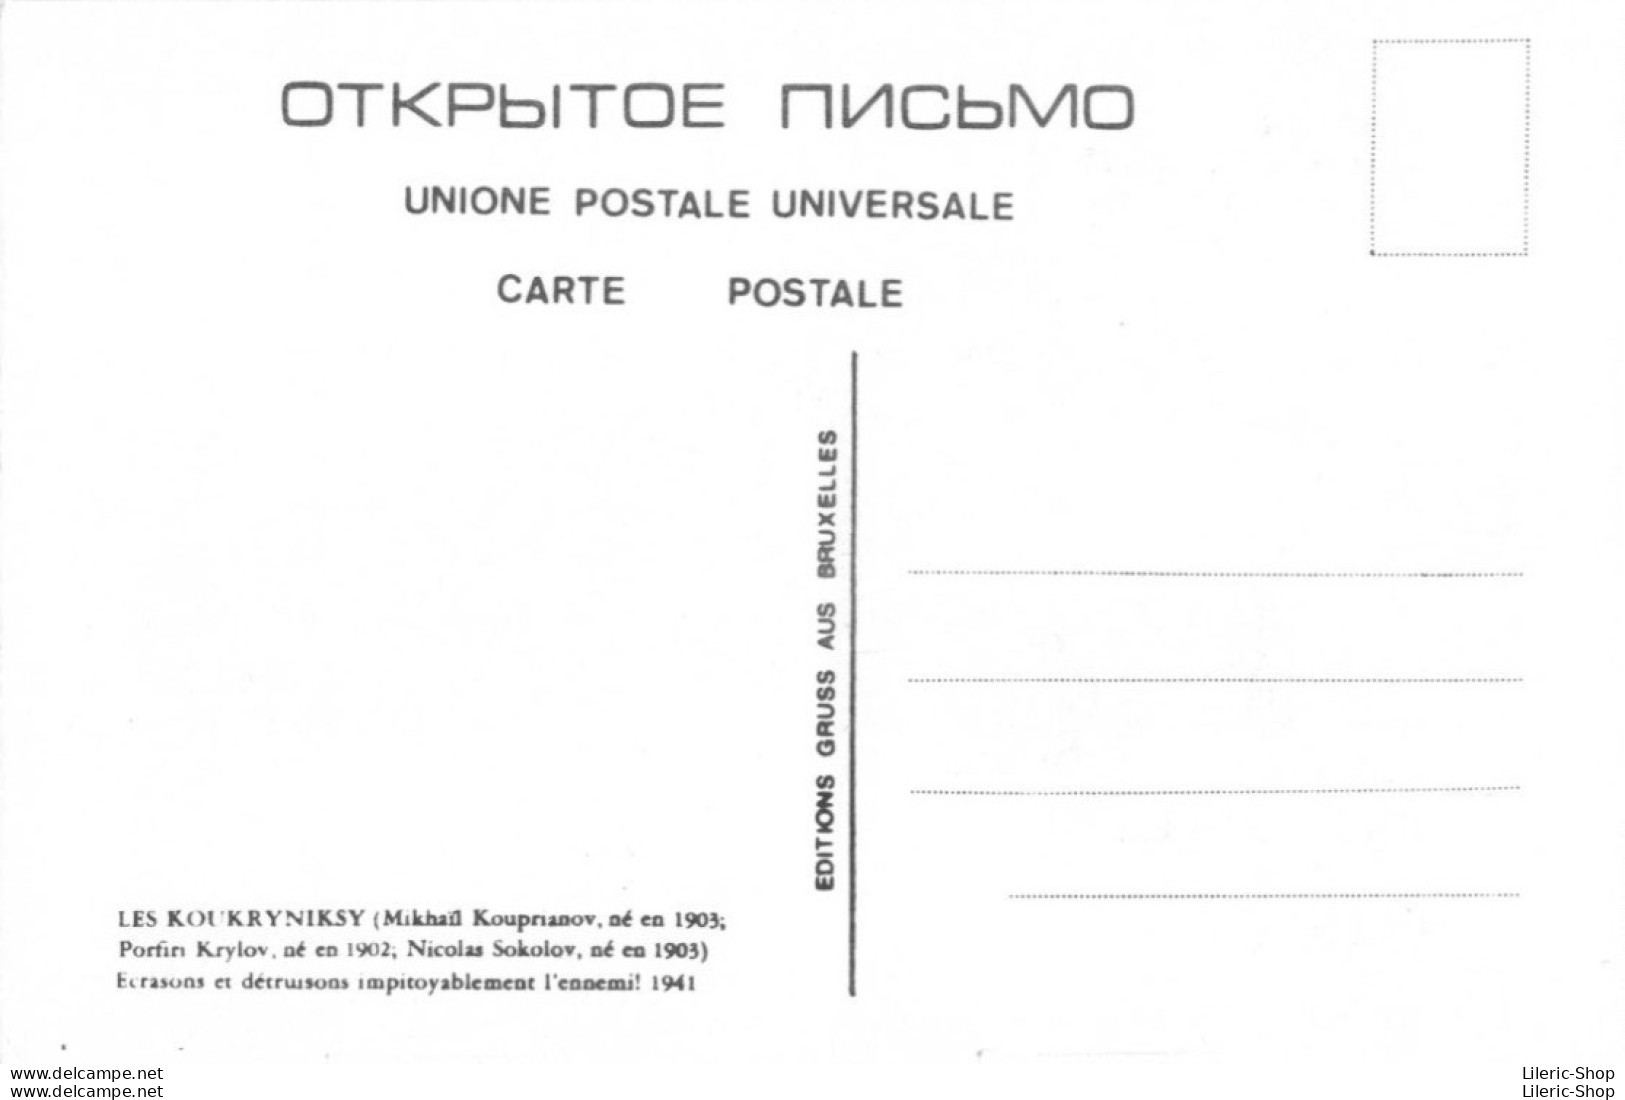 4 CPM  Reproductions d'affiches politiques soviétiques Tirage 500 exemplaires - Pochette papier - Ed Gruss aus Bruxelles